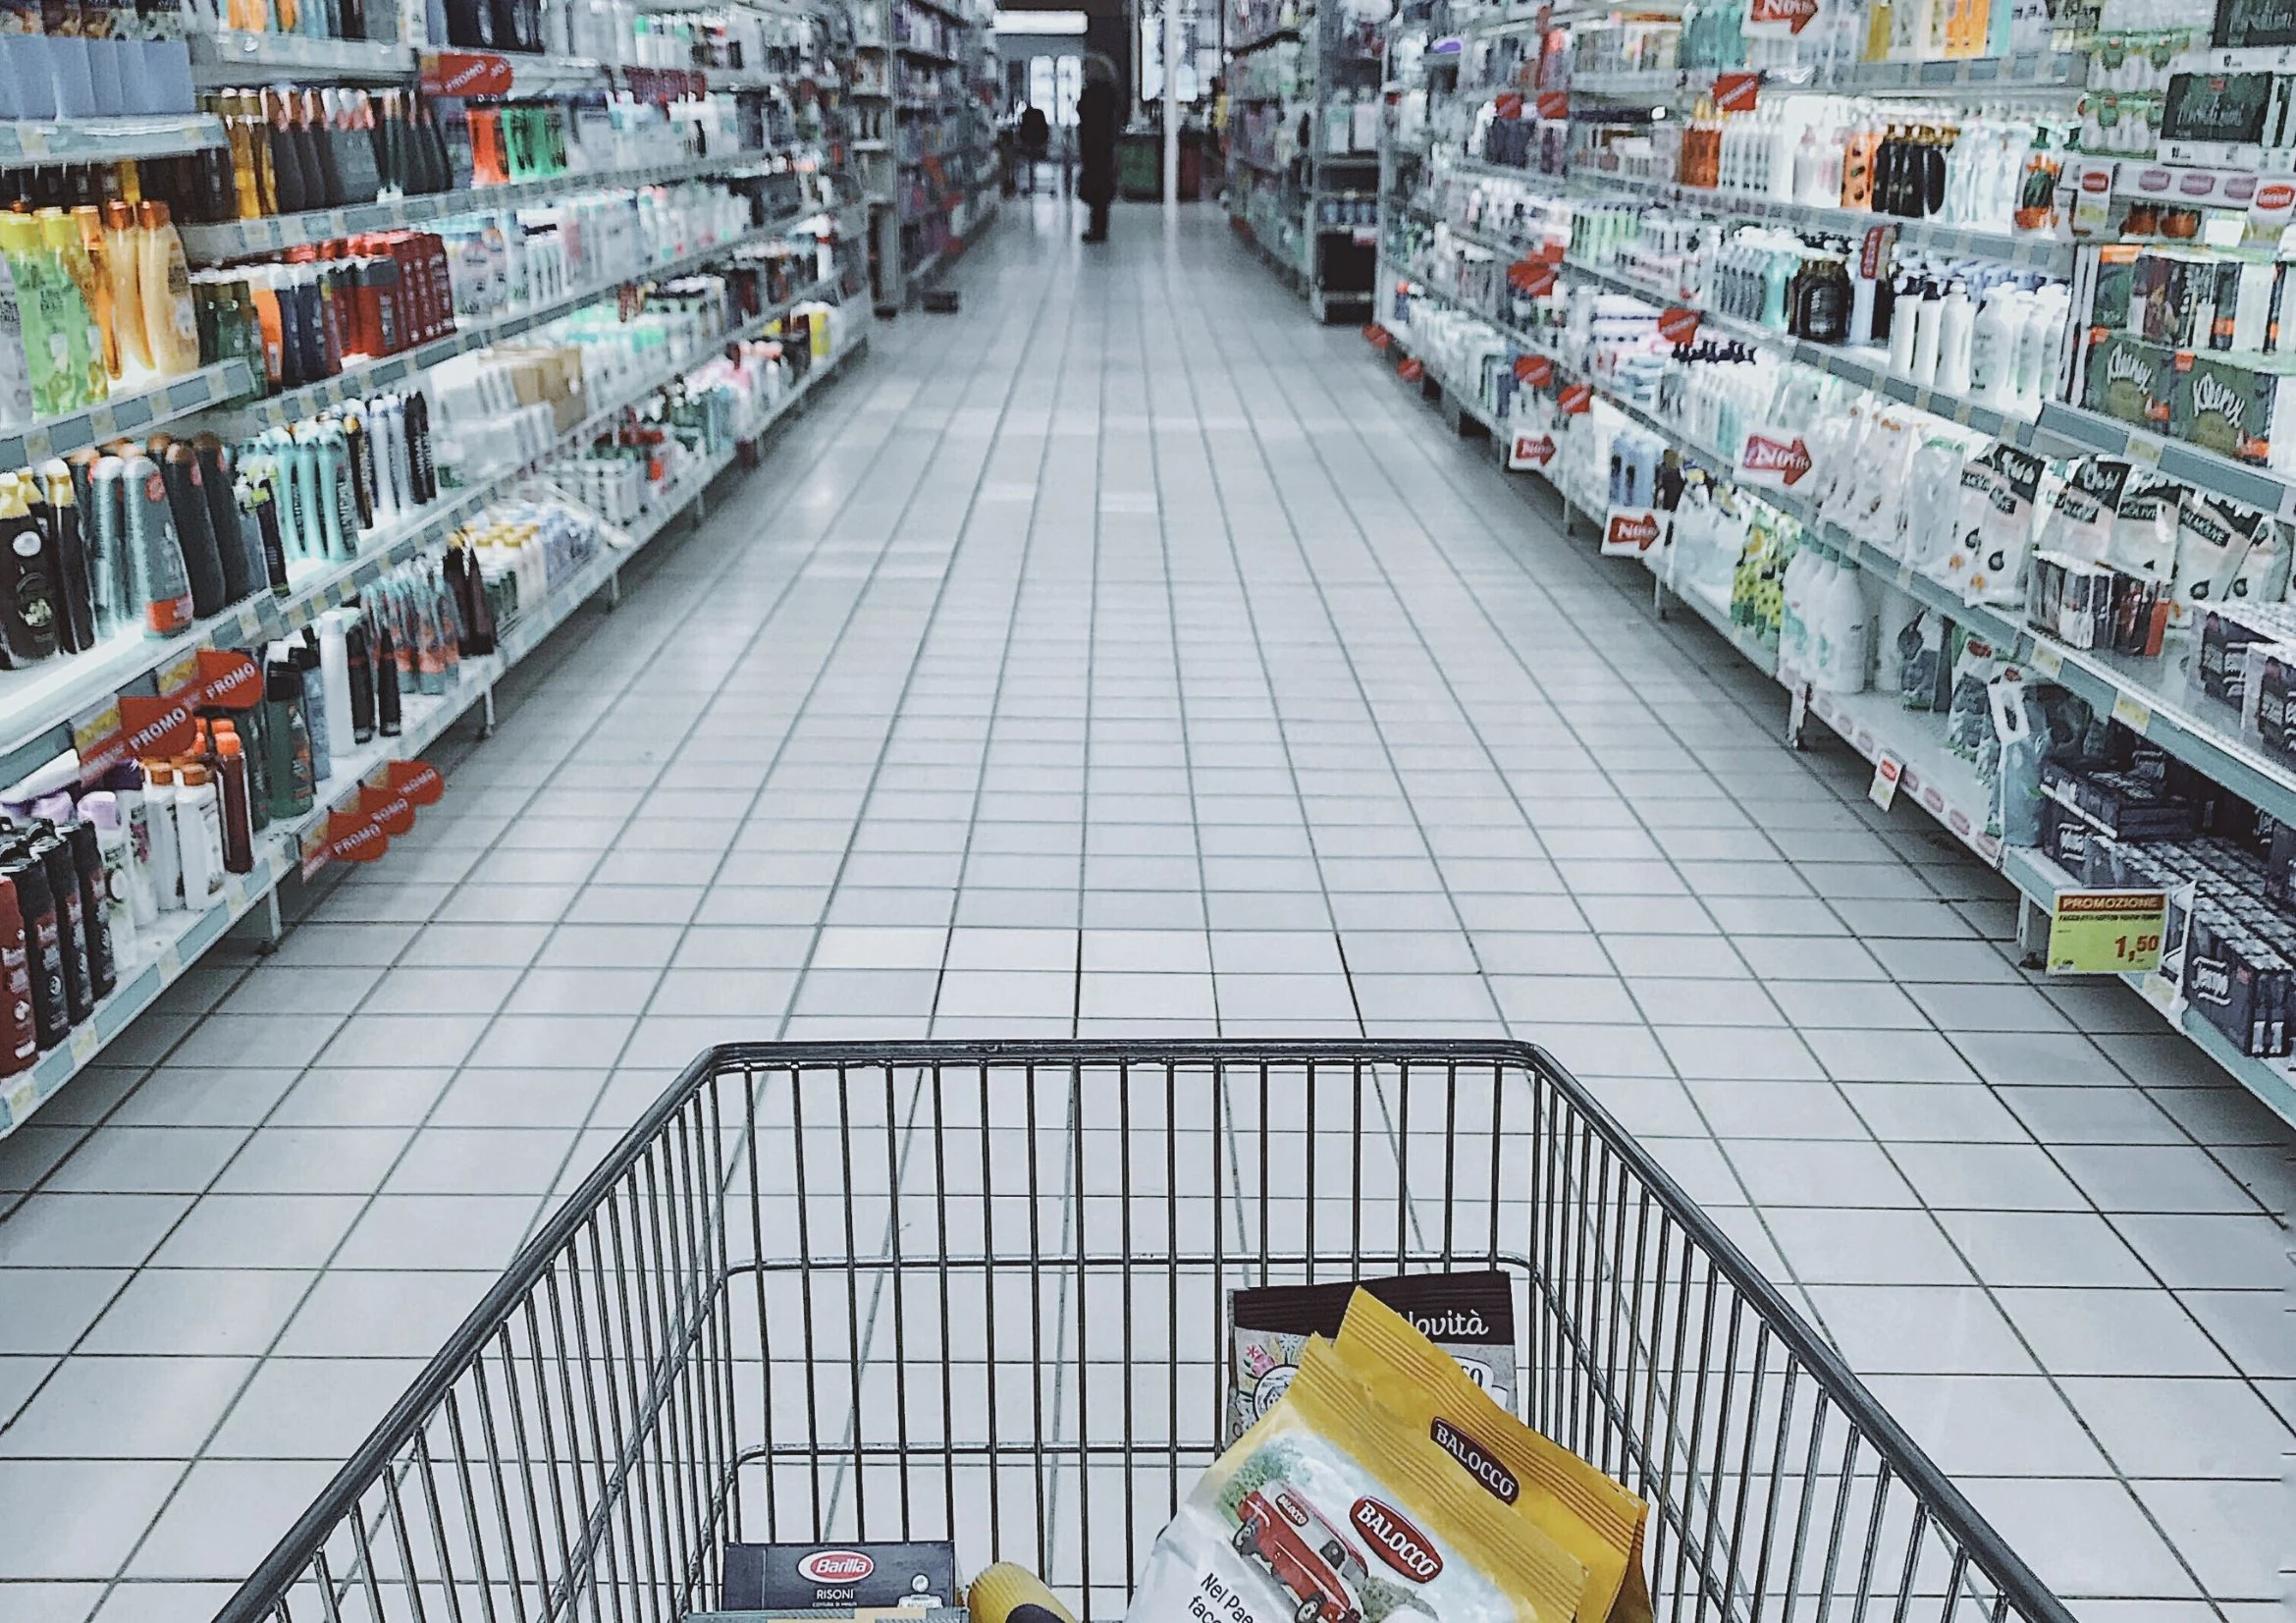 carrinho de compra em um supermercado, para ilustrar o ambiente de uma loja que precisa saber como definir preços e escolher o mix de produtos